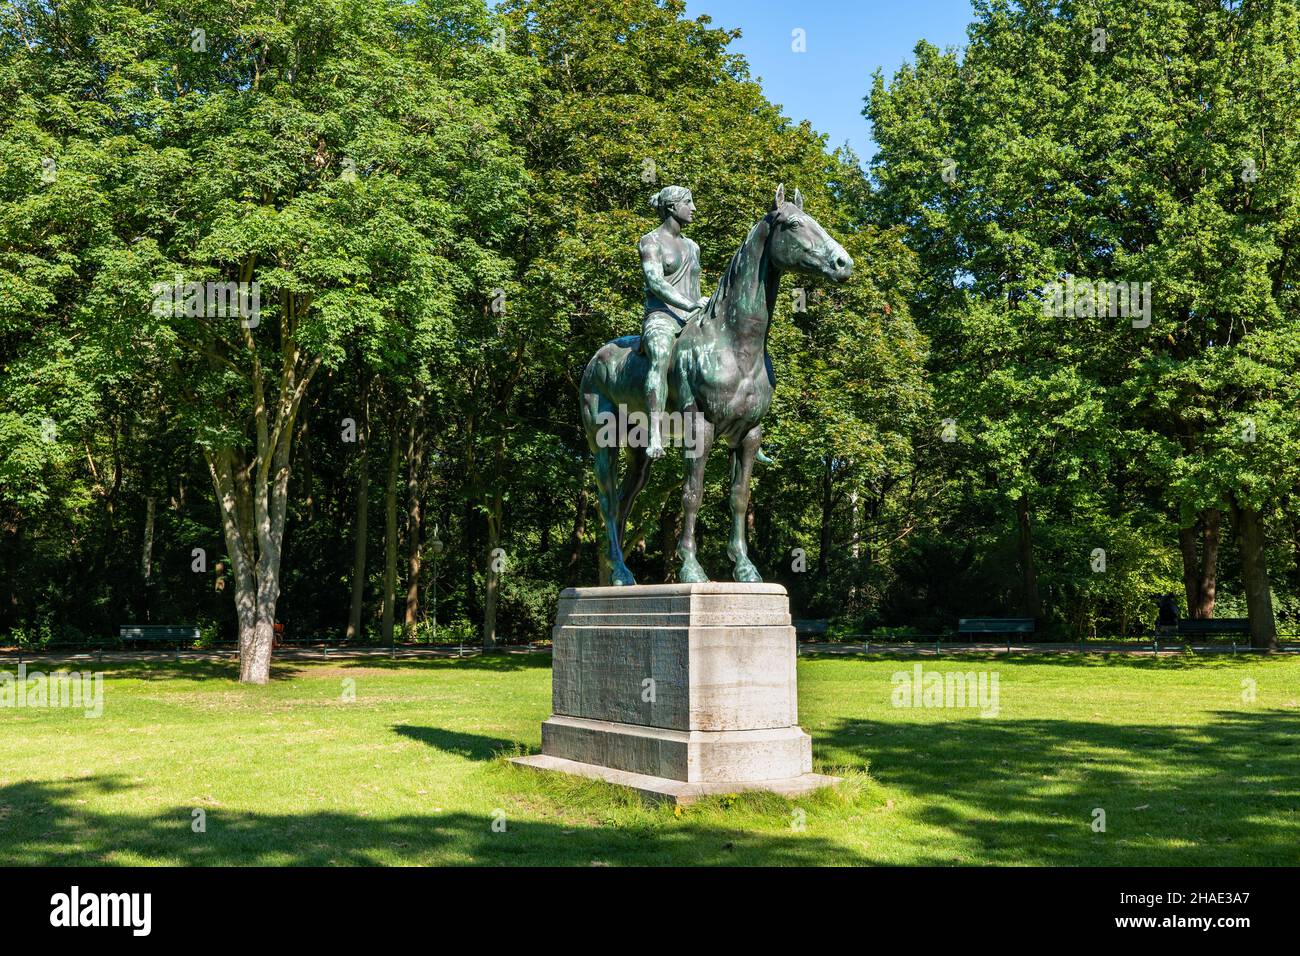 Amazone à cheval (Amazone zu Pferde) statue équestre en bronze de 1895 par le sculpteur prussien Louis Tuaillon dans le parc Tiergarten à Berlin, Allemagne. Banque D'Images